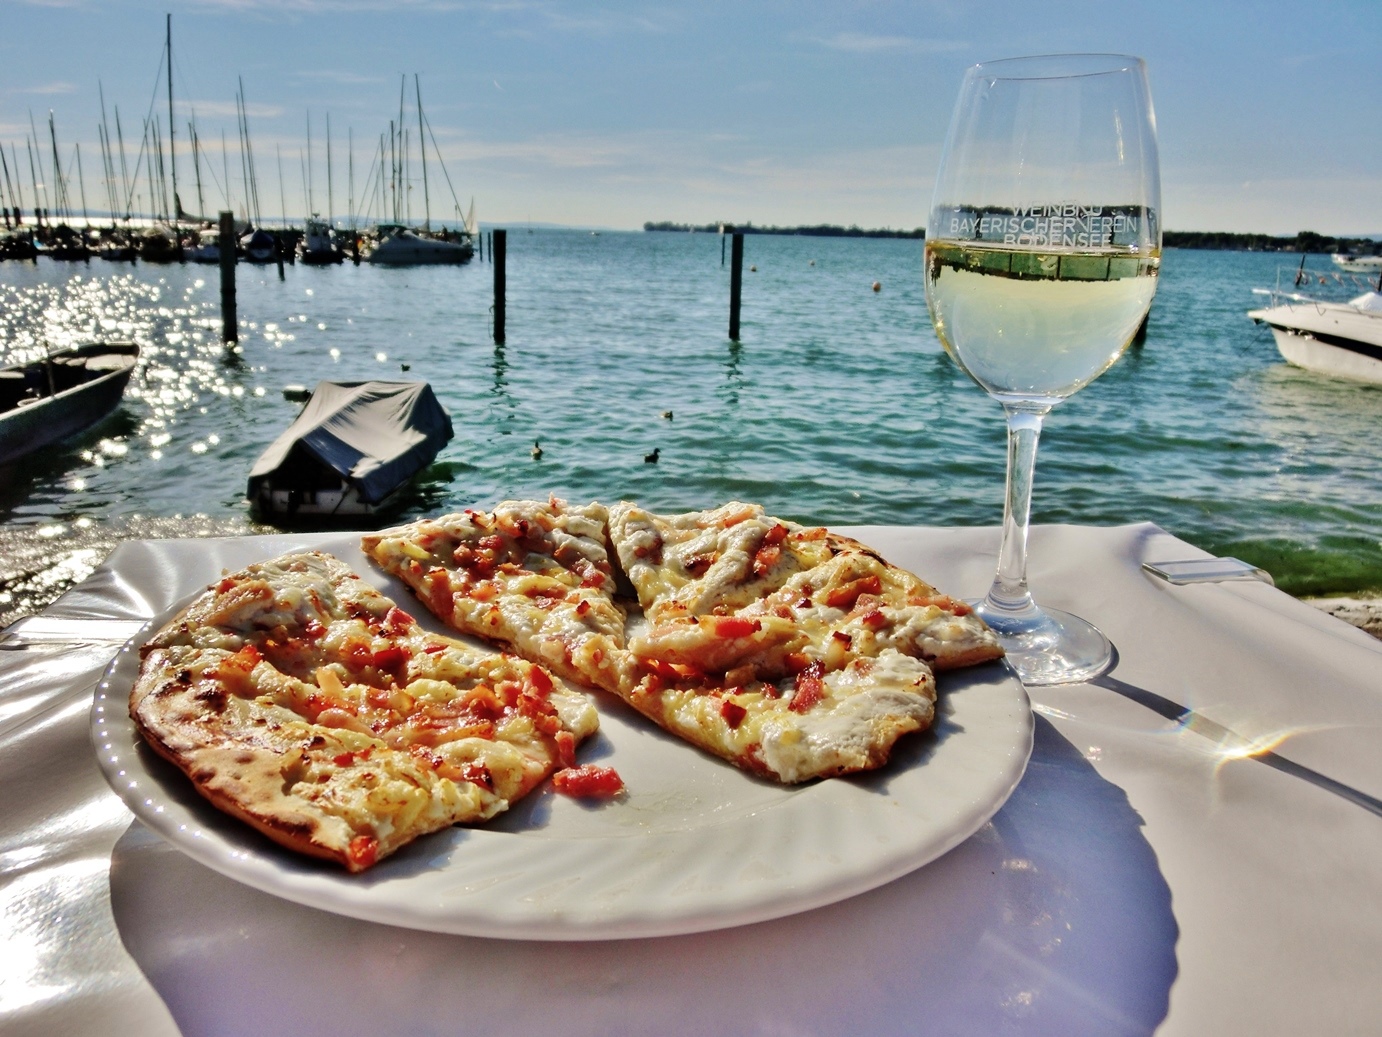  Essen mit Blick auf den Bodensee mit Wein und Pizza - das Bild wird mit Klick vergrößert 